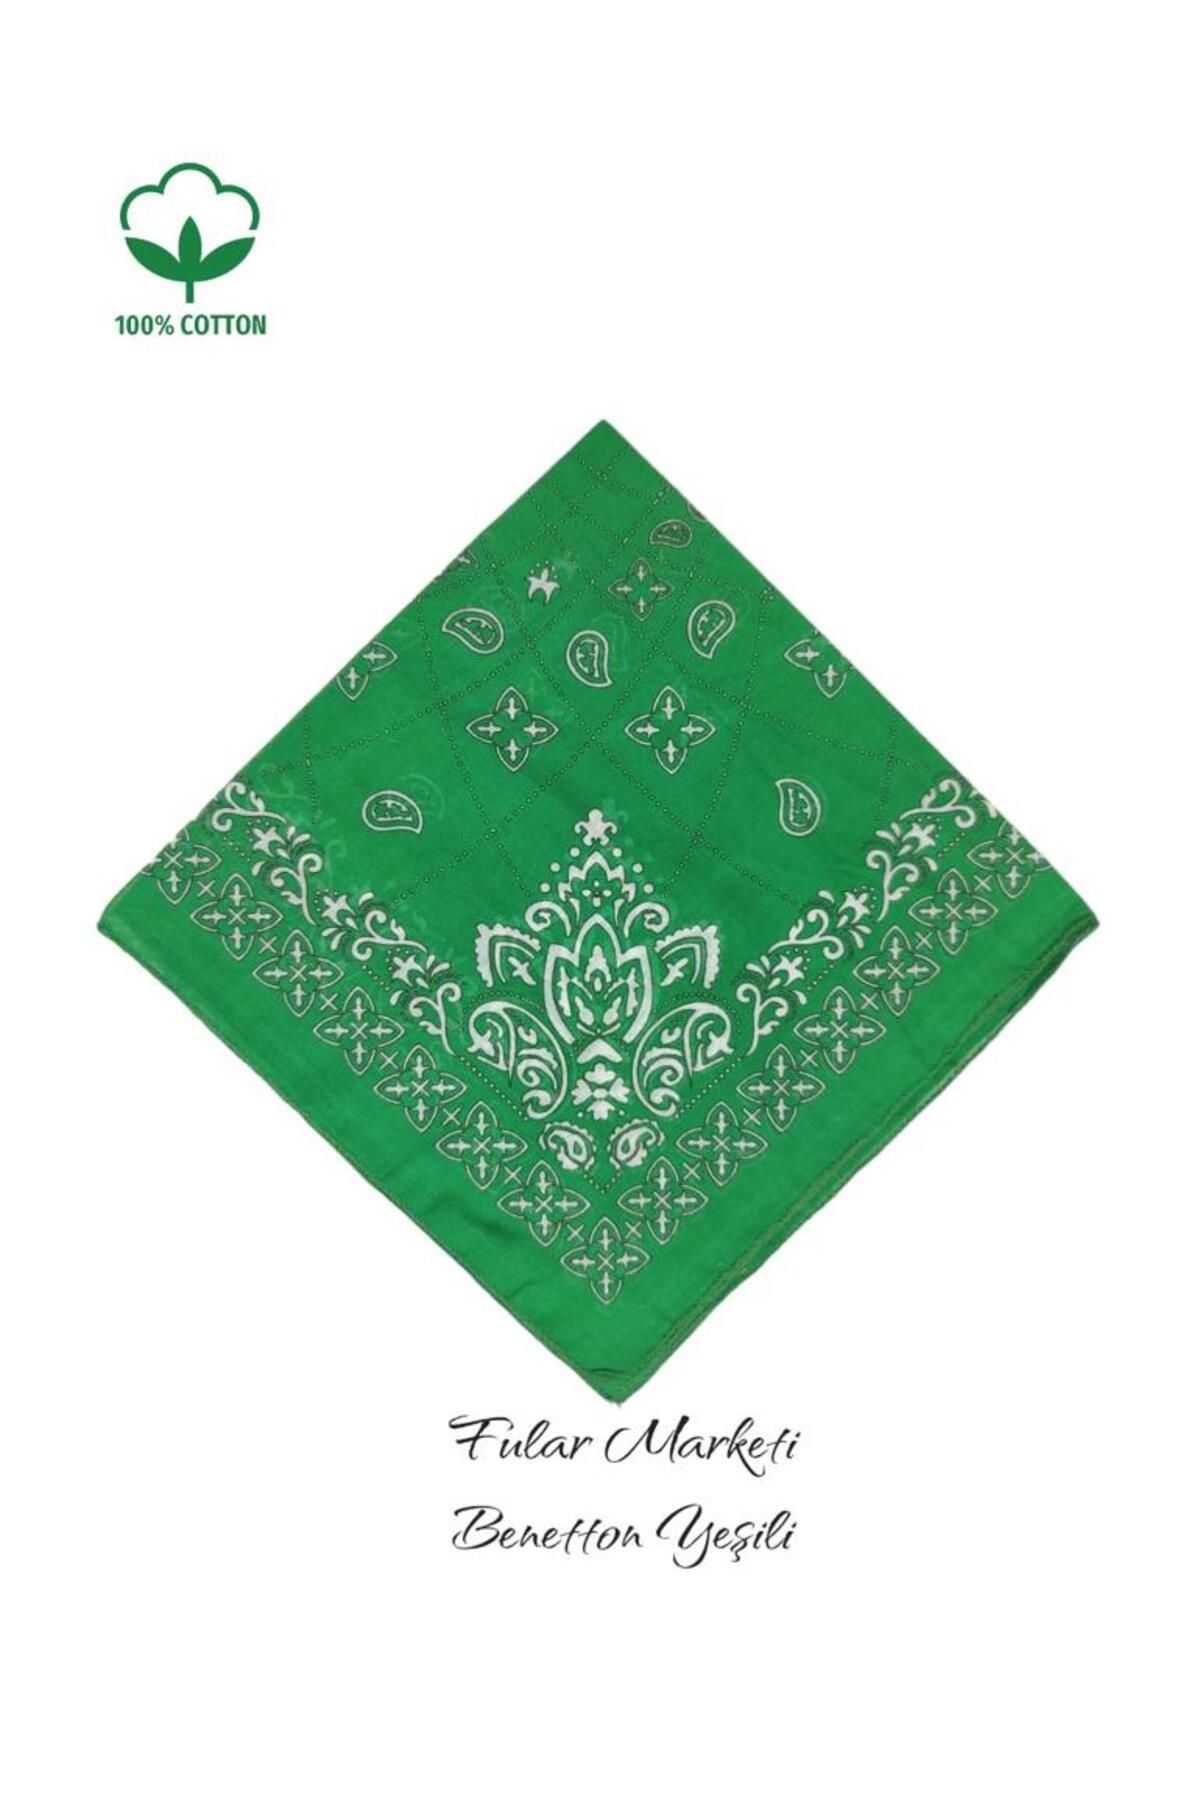 Fular Marketi 5 Al 4 Öde %100 Pamuk Elegance Modeli Bandana Benetton Yeşili Bandanabonesu